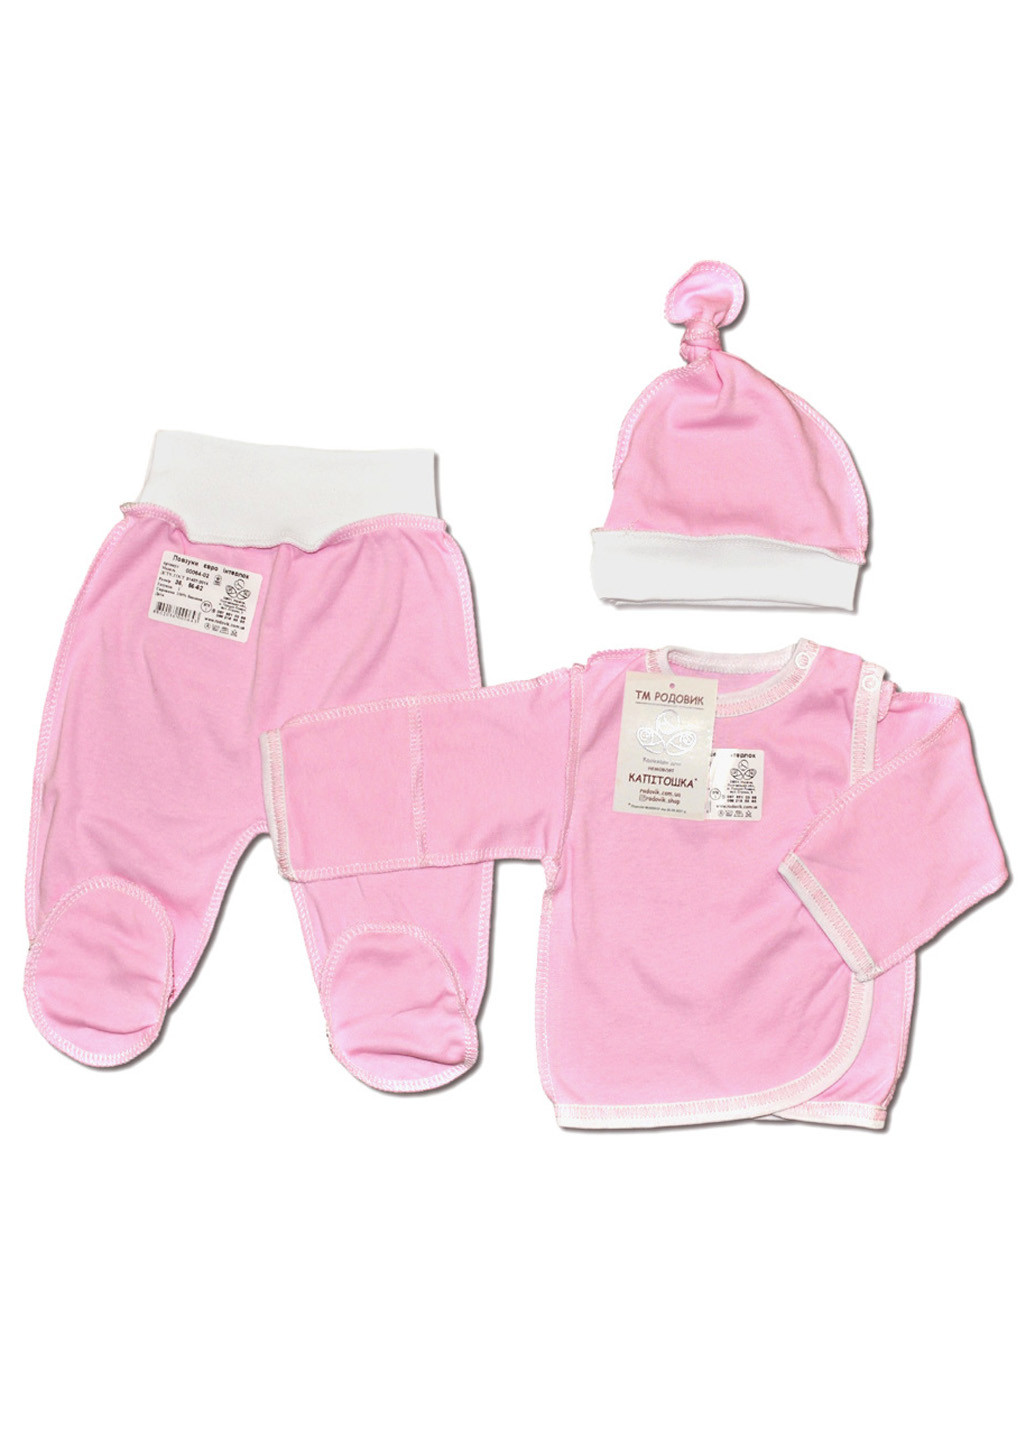 Рожевий демісезонний костюм для новонароджених №1 (3 предмети) тм колекція капітошка Родовик костюм Р